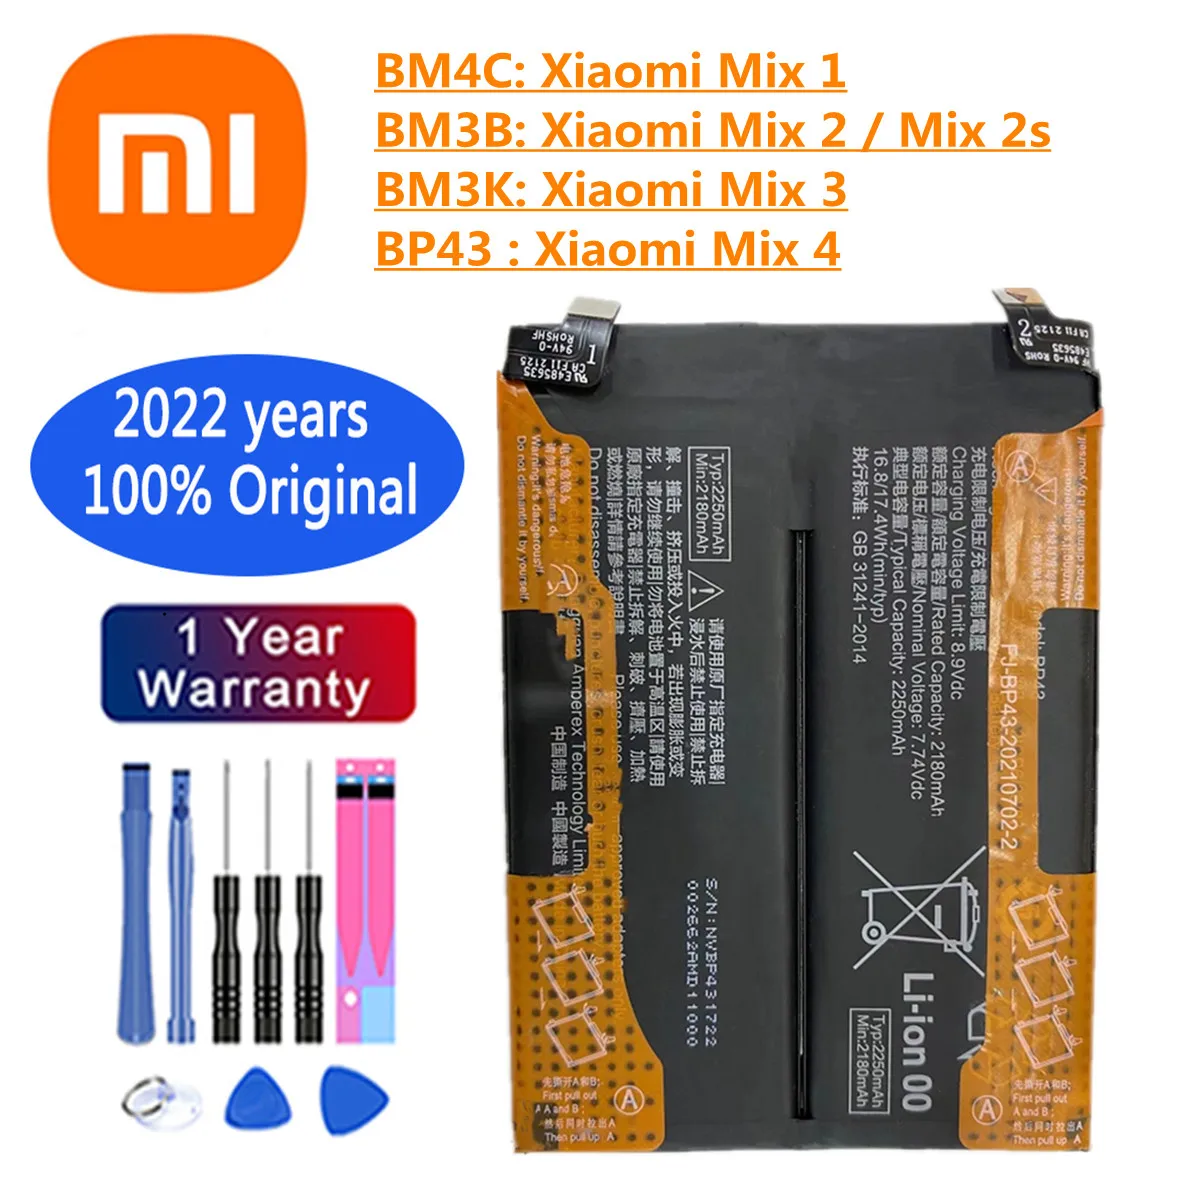 

New 100% Orginal BM3B BM3K BM4C BP43 Battery For Xiaomi Mi Mix 2 2S 3 1 4 Mix2 Mix2S Mix3 Mix4 Phone Battery In Stock Fast Ship